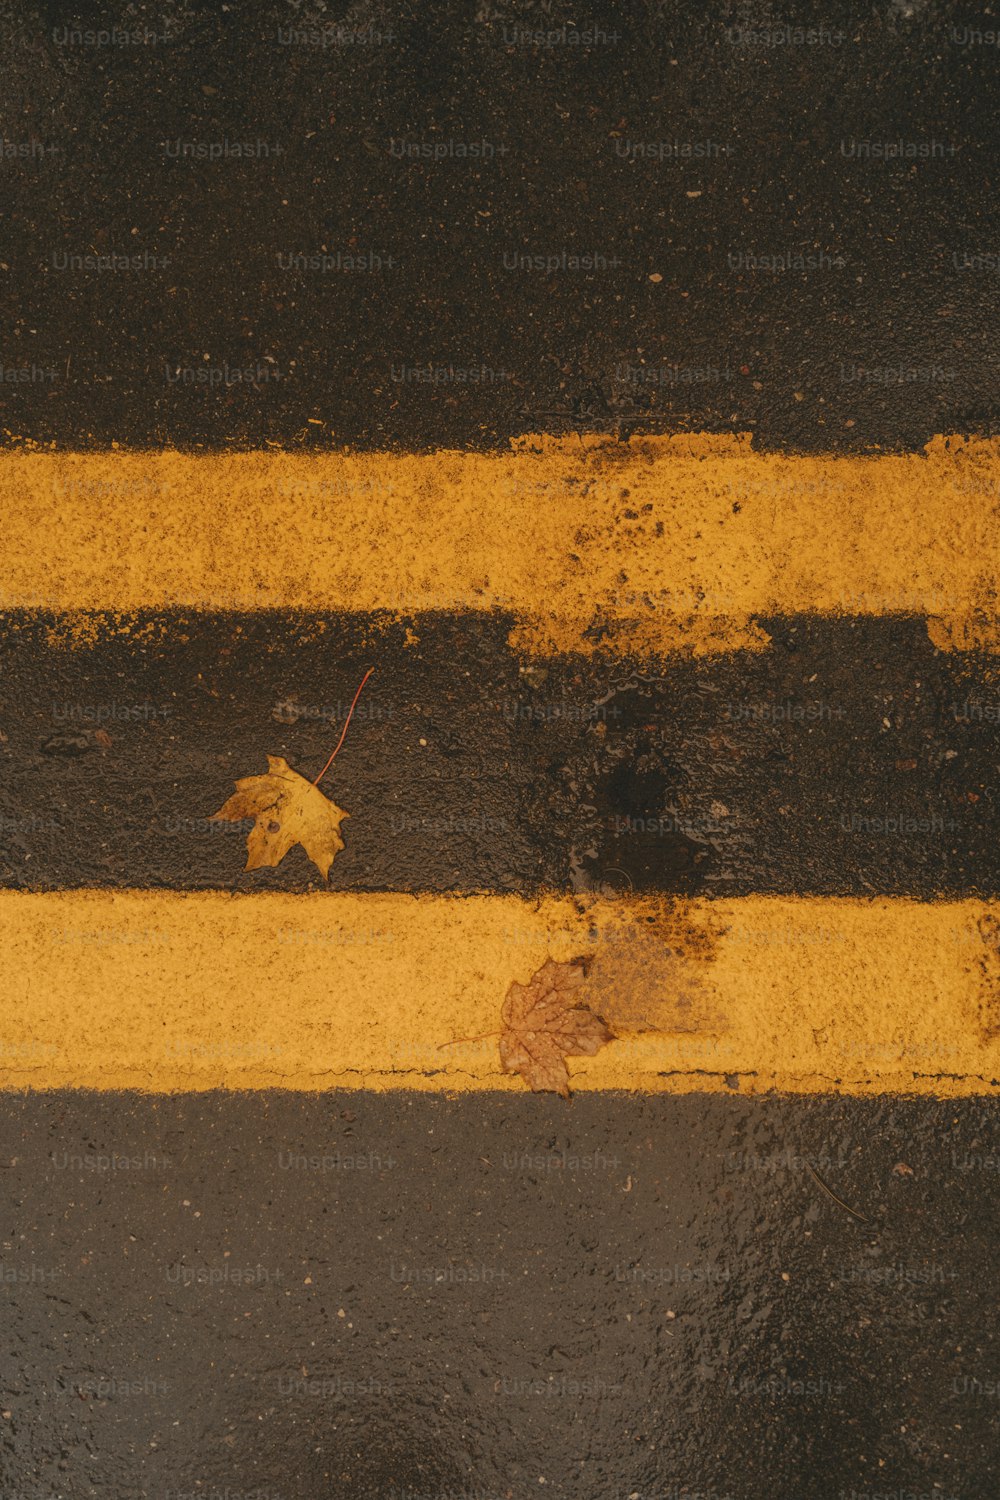 Una línea amarilla pintada al costado de una carretera